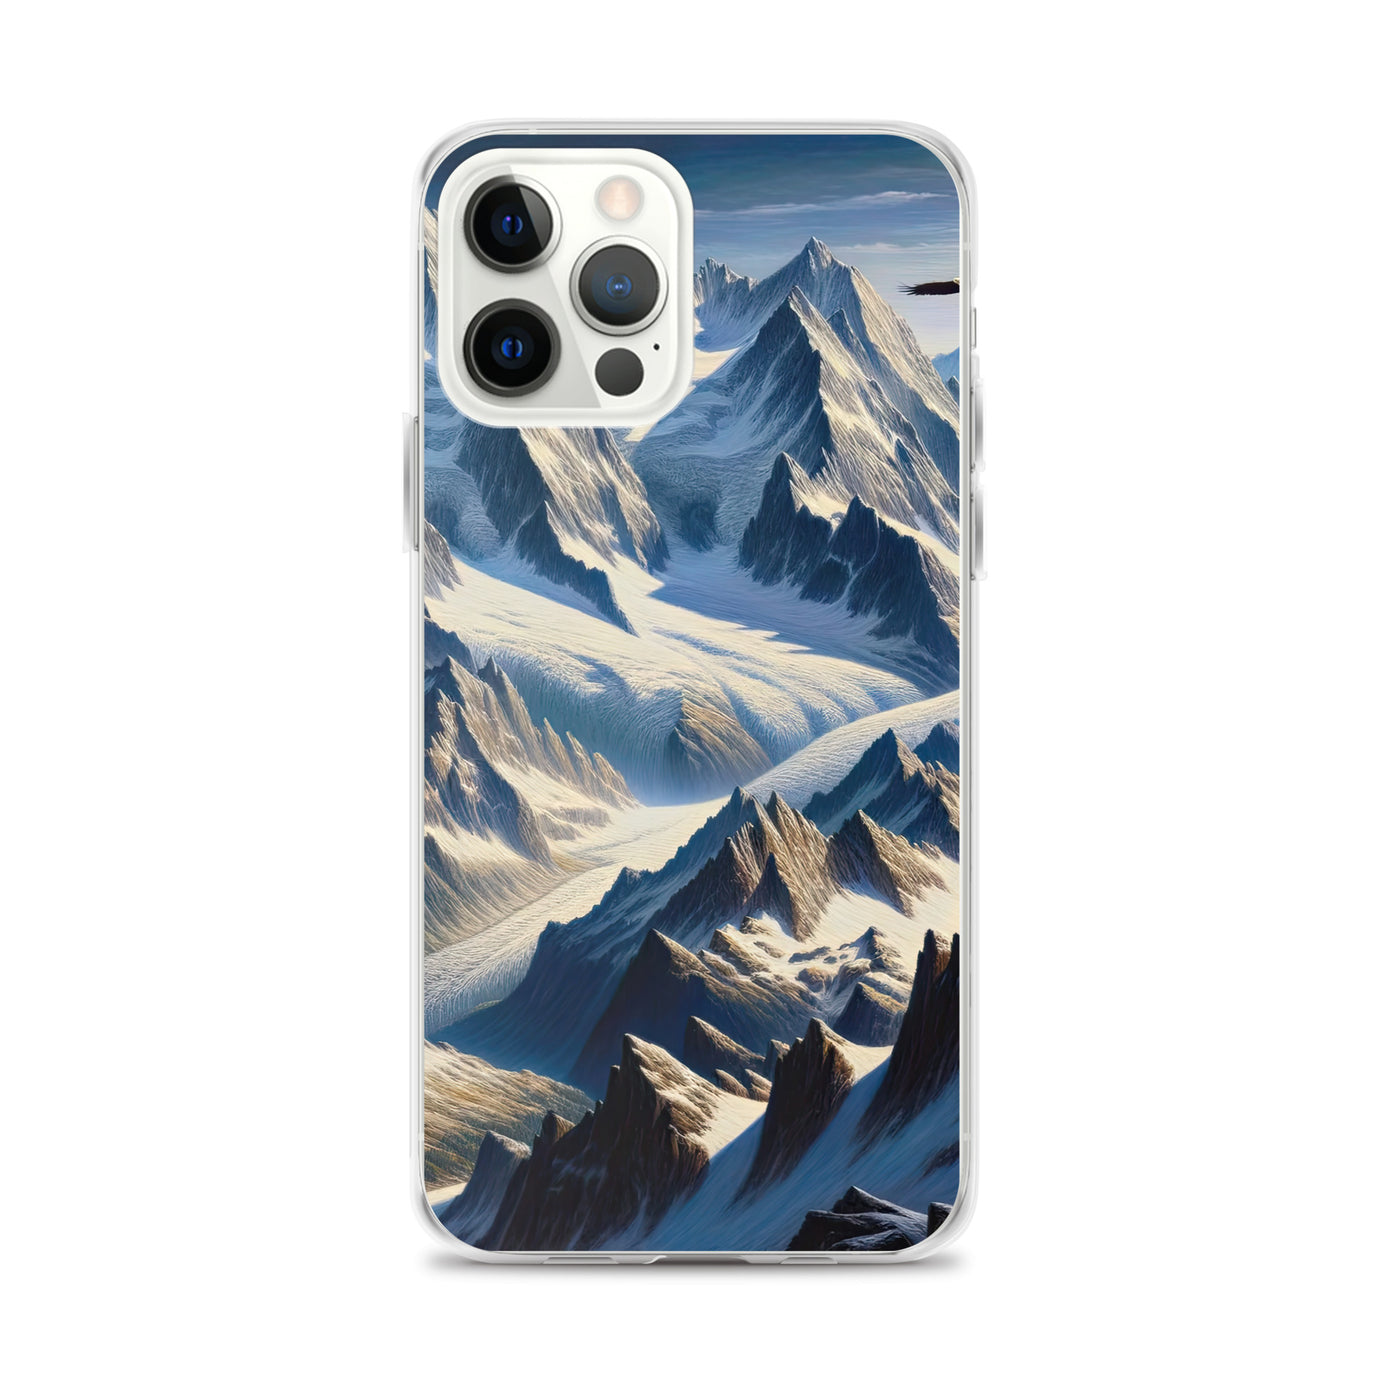 Ölgemälde der Alpen mit hervorgehobenen zerklüfteten Geländen im Licht und Schatten - iPhone Schutzhülle (durchsichtig) berge xxx yyy zzz iPhone 12 Pro Max